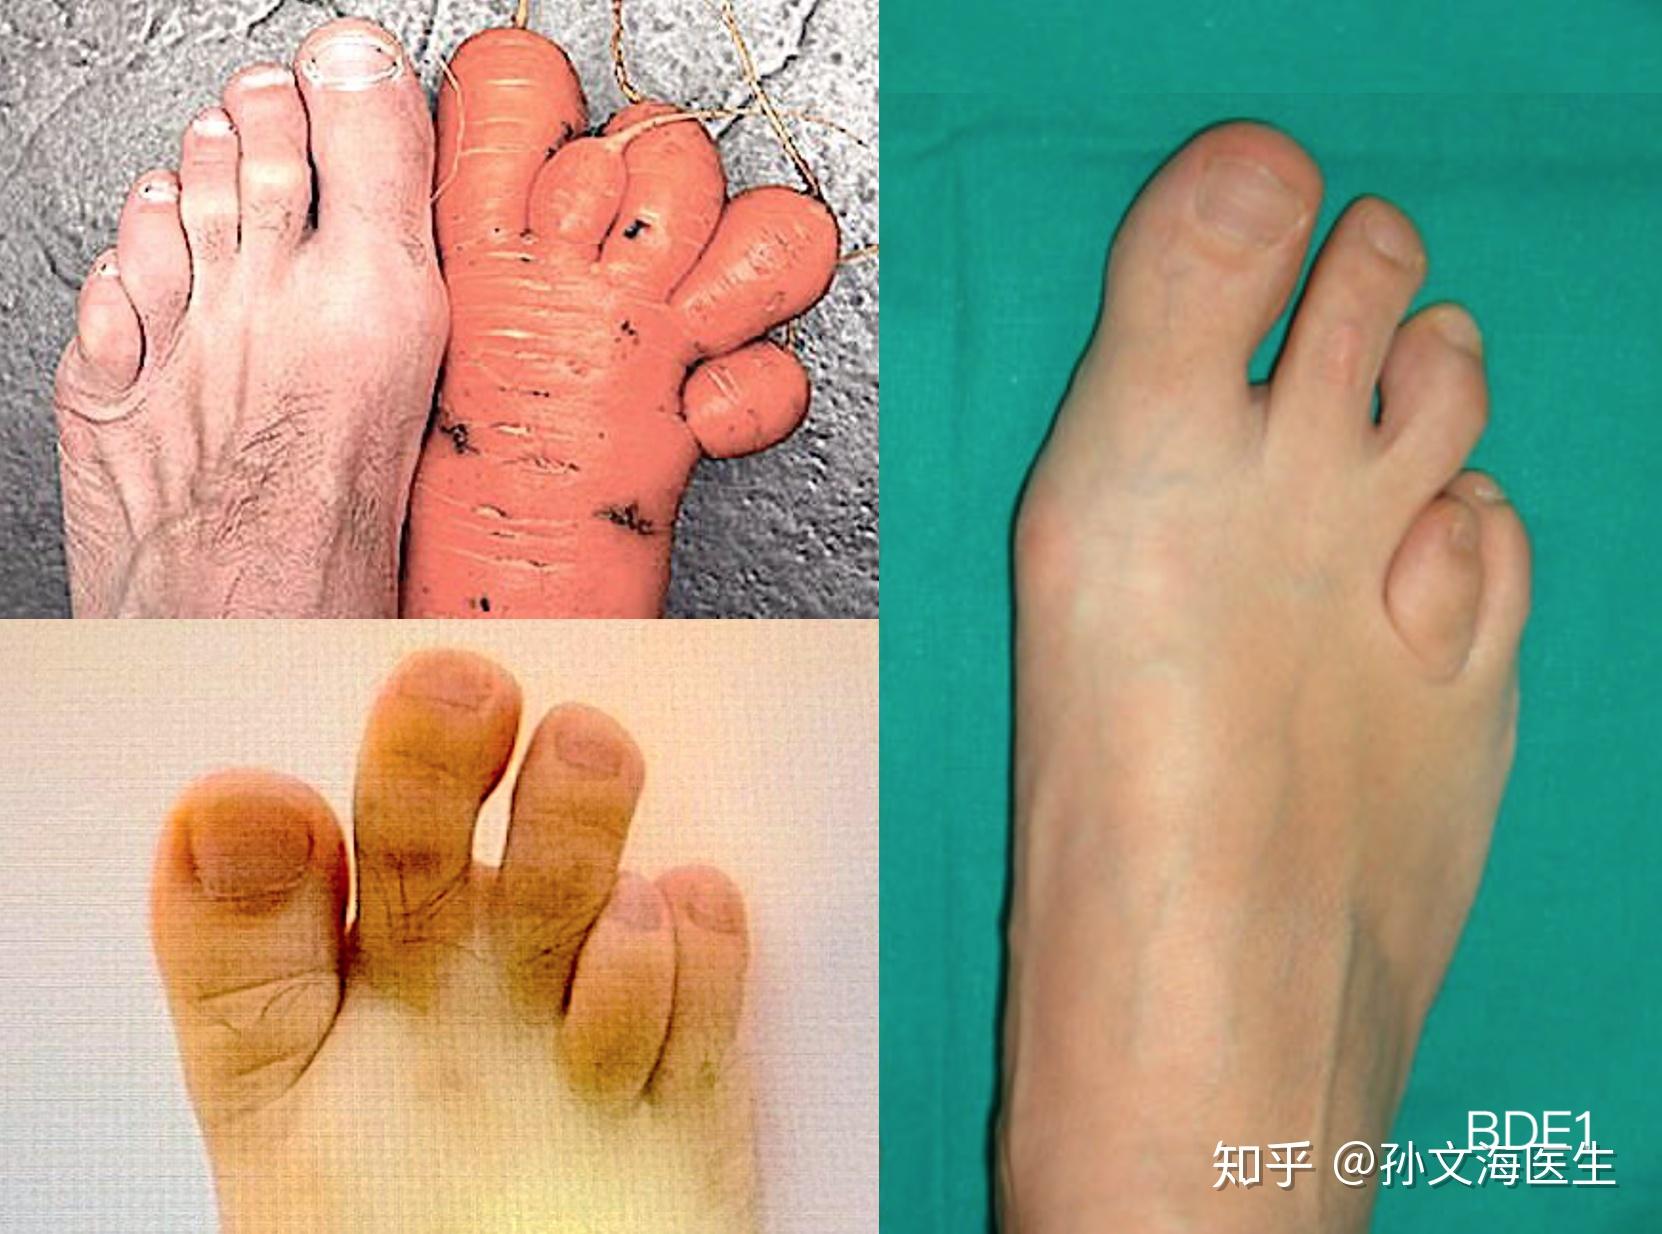 双手双脚都是六指真的非常罕见吗？会有哪些并发症？ - 知乎